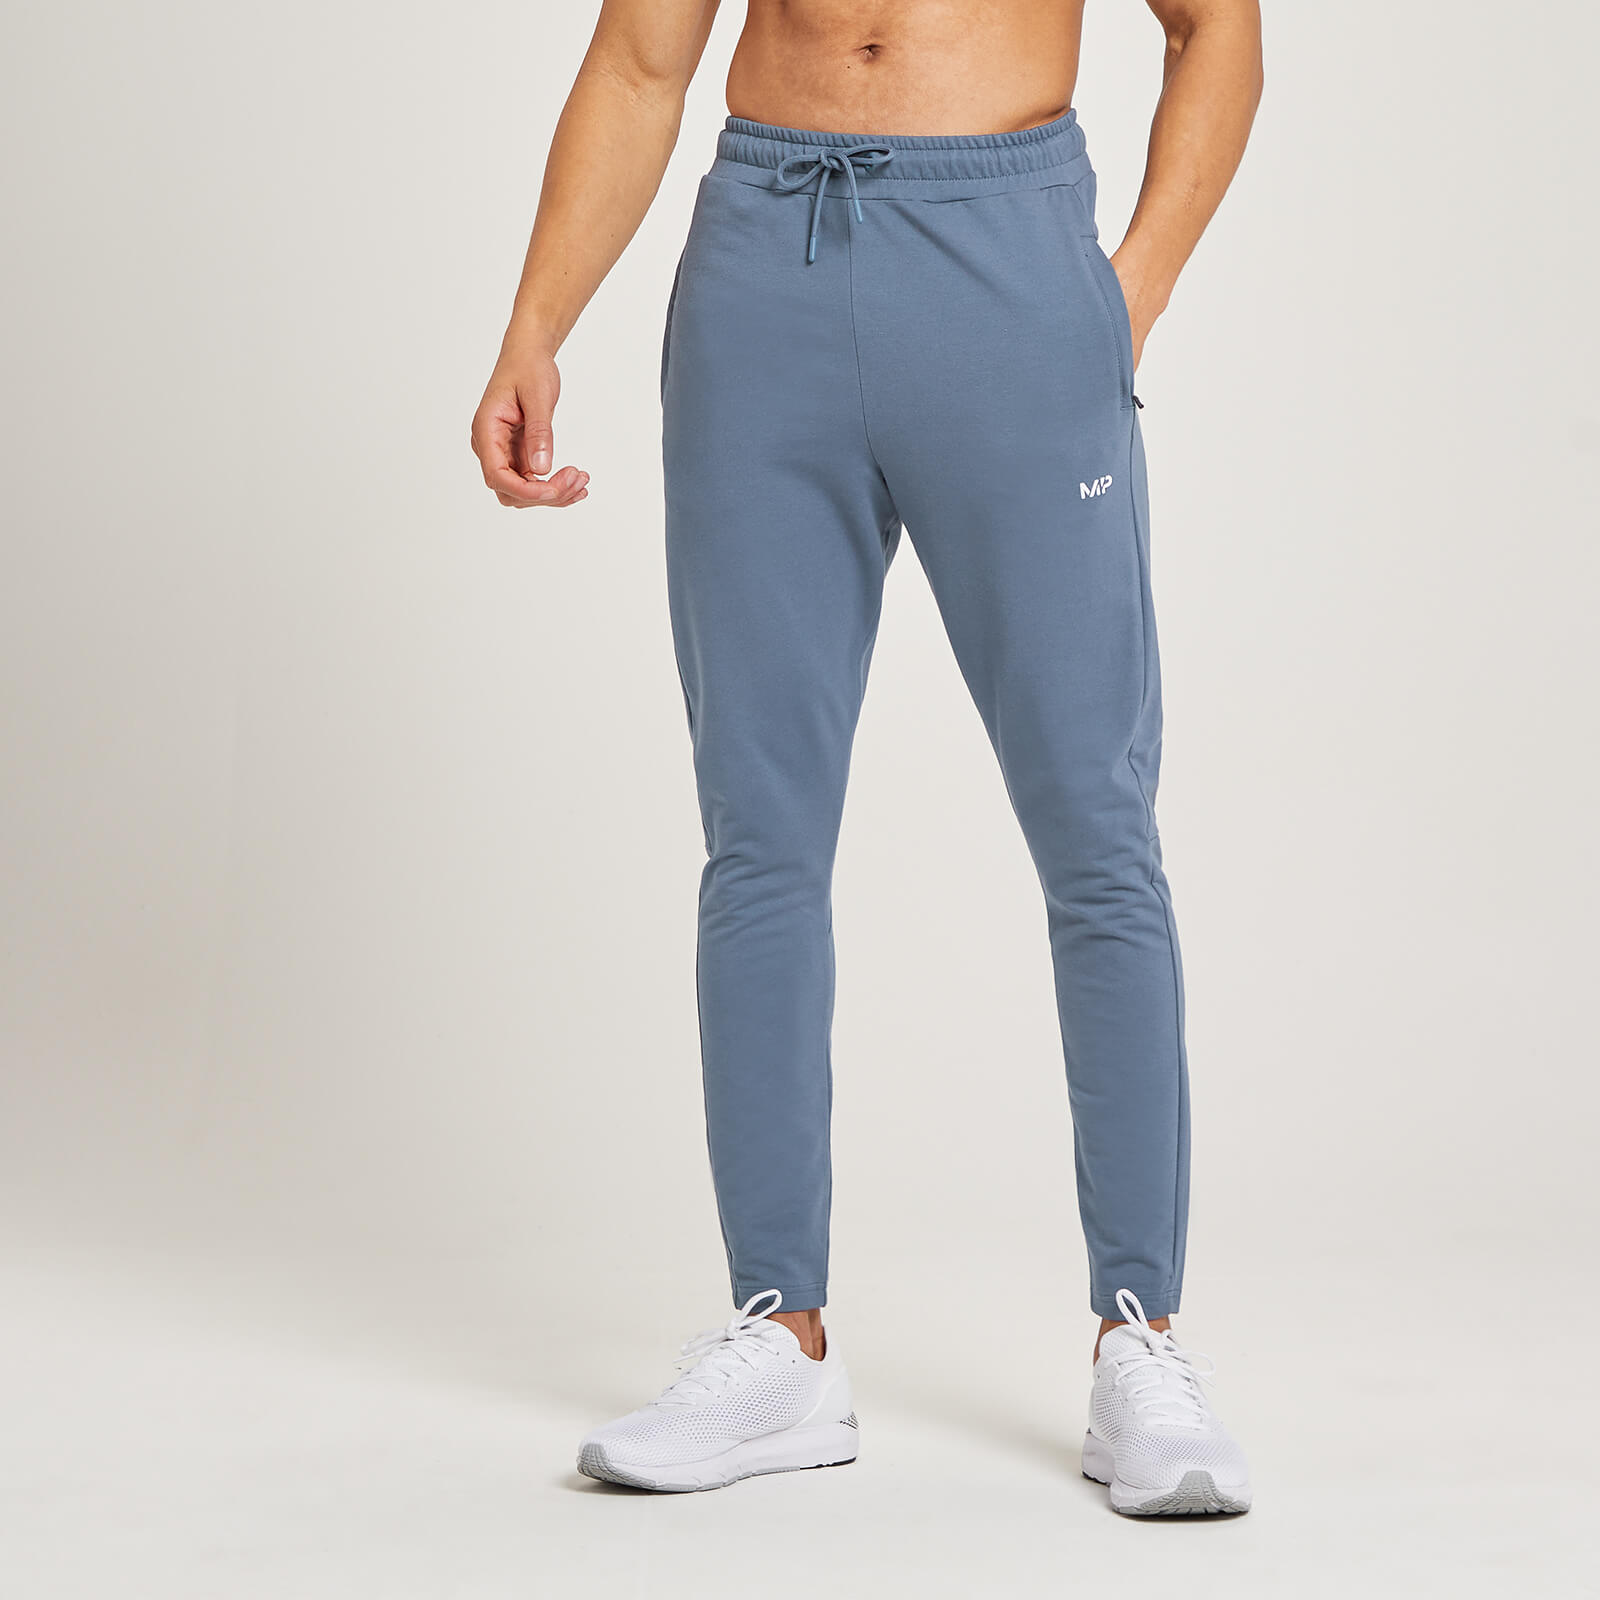 Pantalón deportivo Form para hombre de MP - Azul acero - S